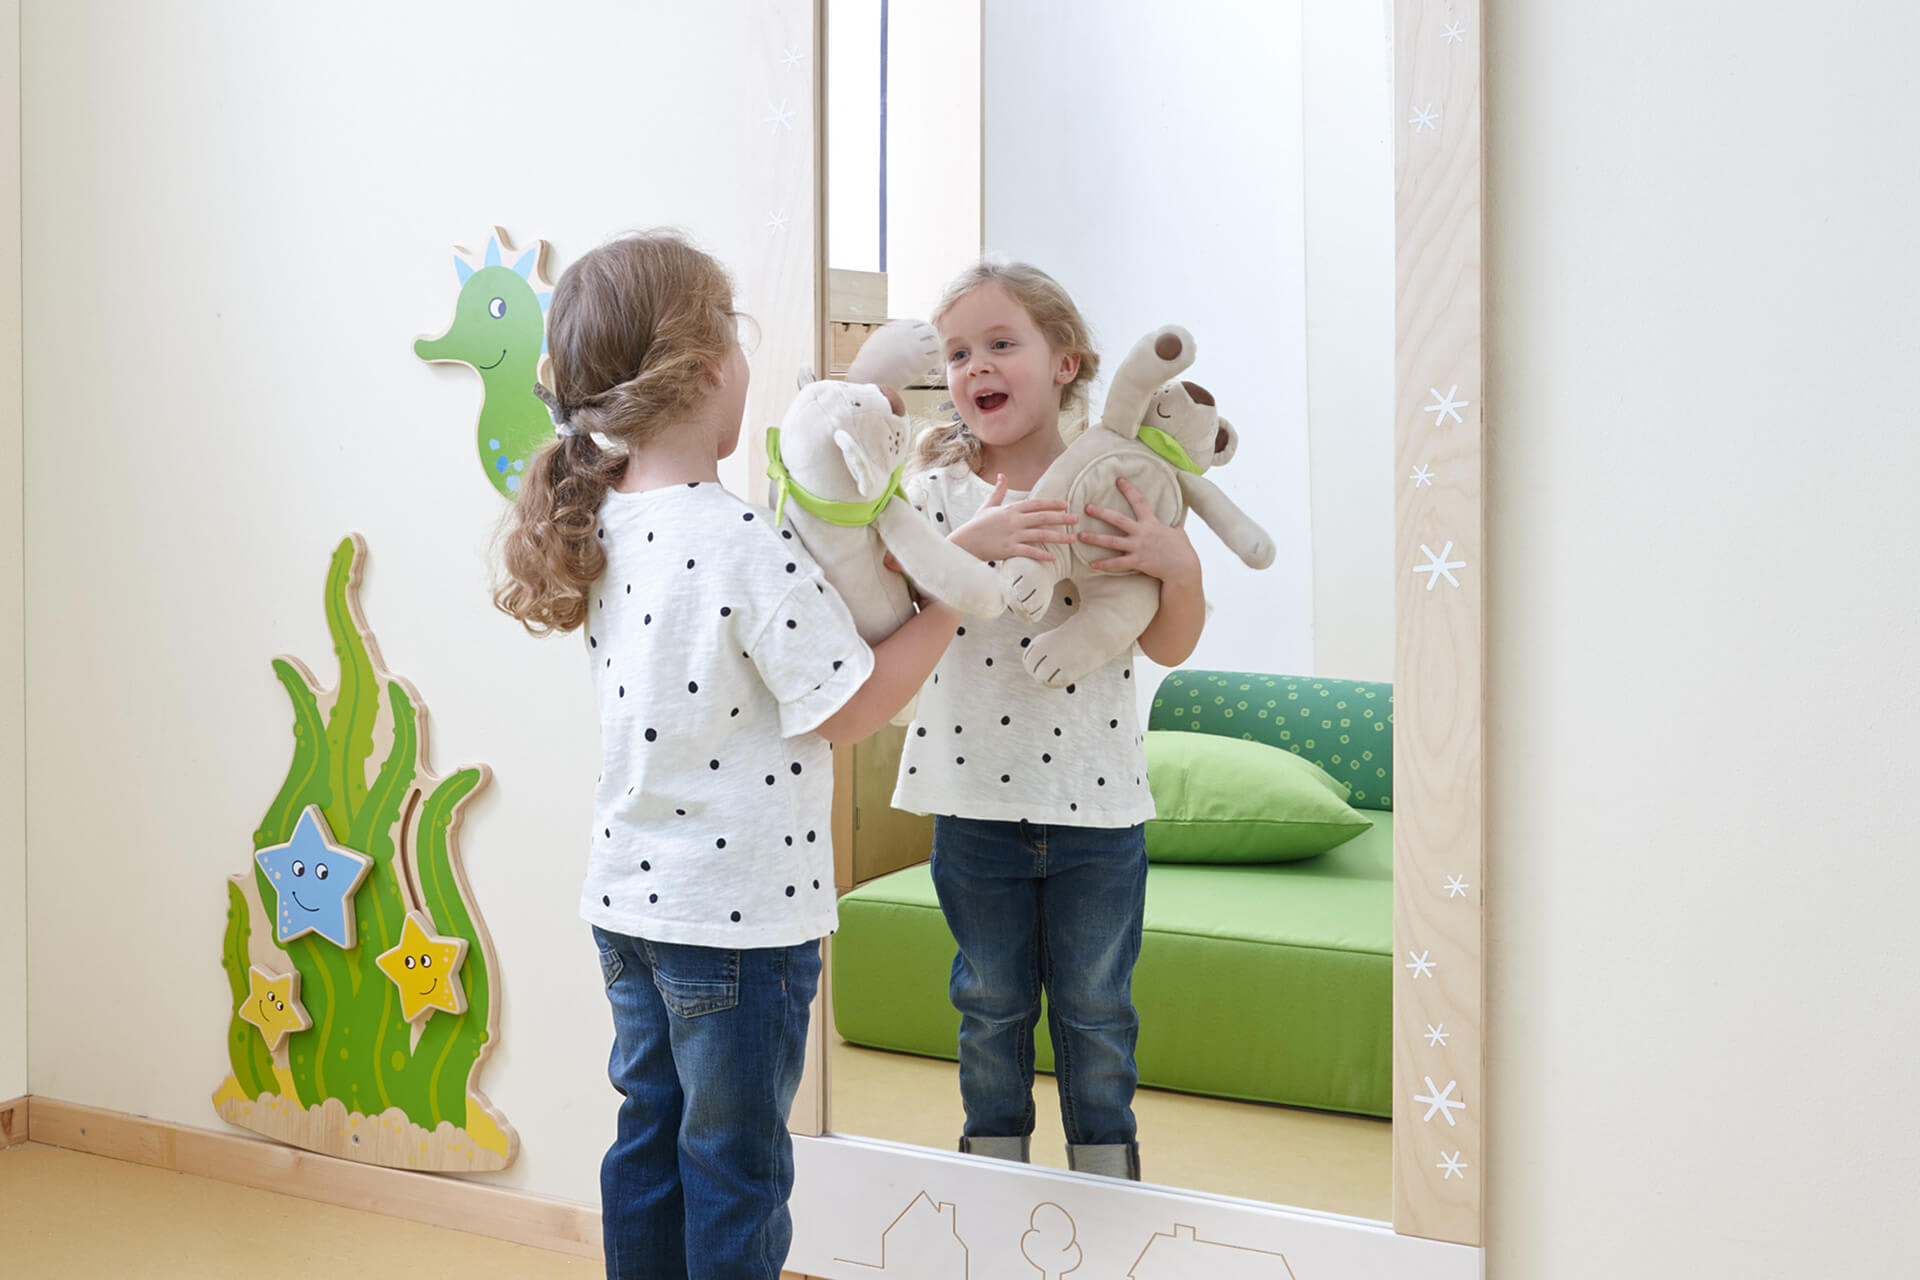 Räume | Krippe & Kindergarten | Wasch- und Wickelraum | Blondes Mädchen mit Zopf und gepunktetem T-Shirt, steht vor einem Spiegel, mit Teddybär im Arm